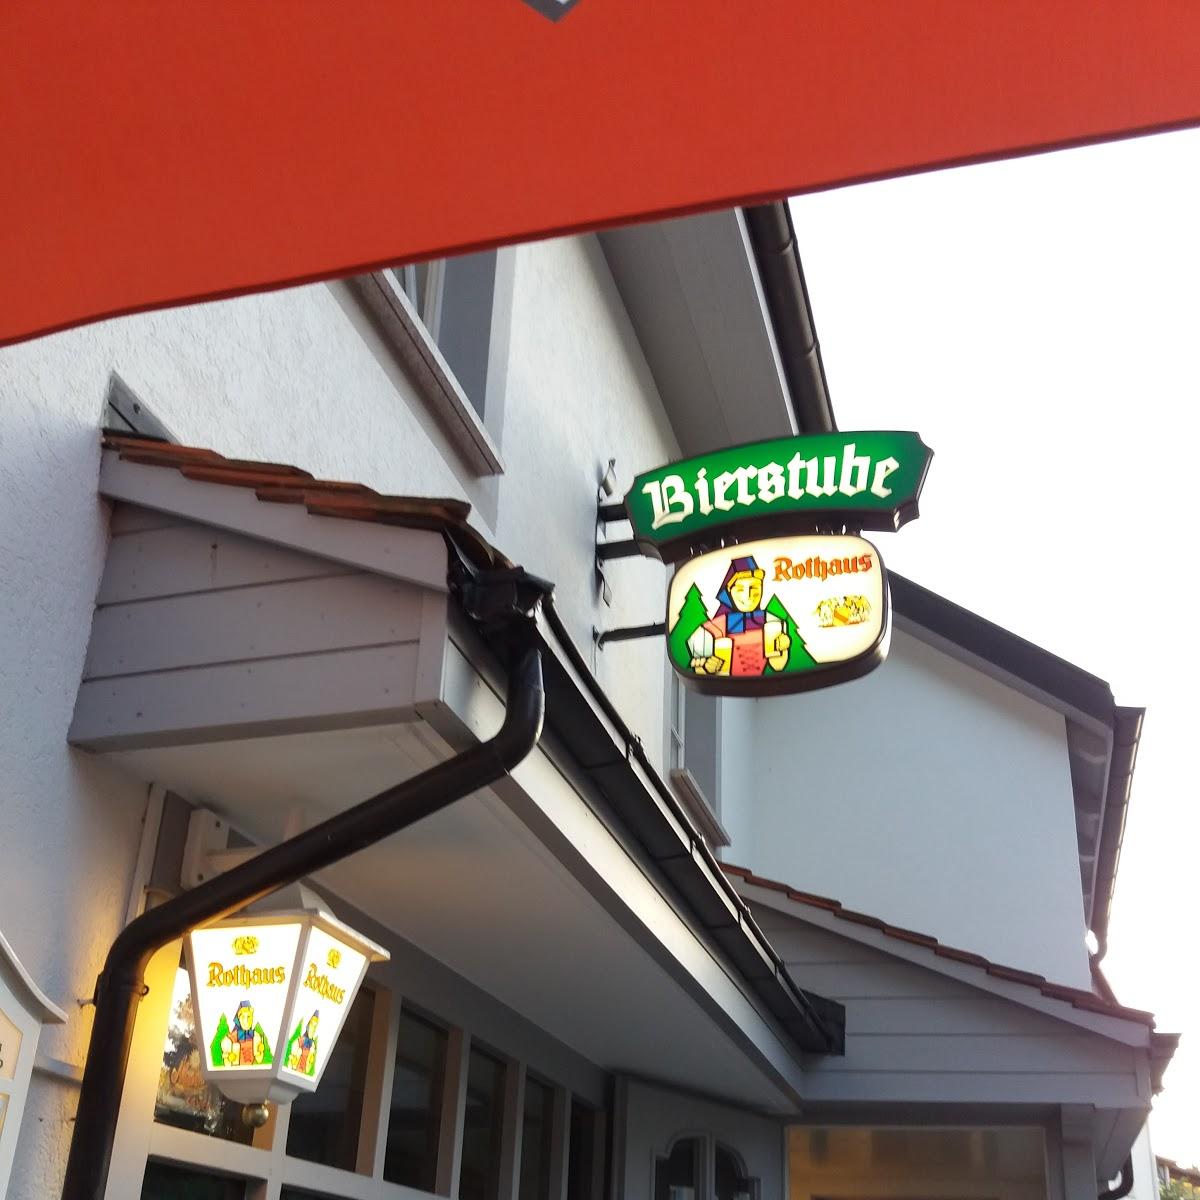 Restaurant "Bierstube" in  Höchenschwand